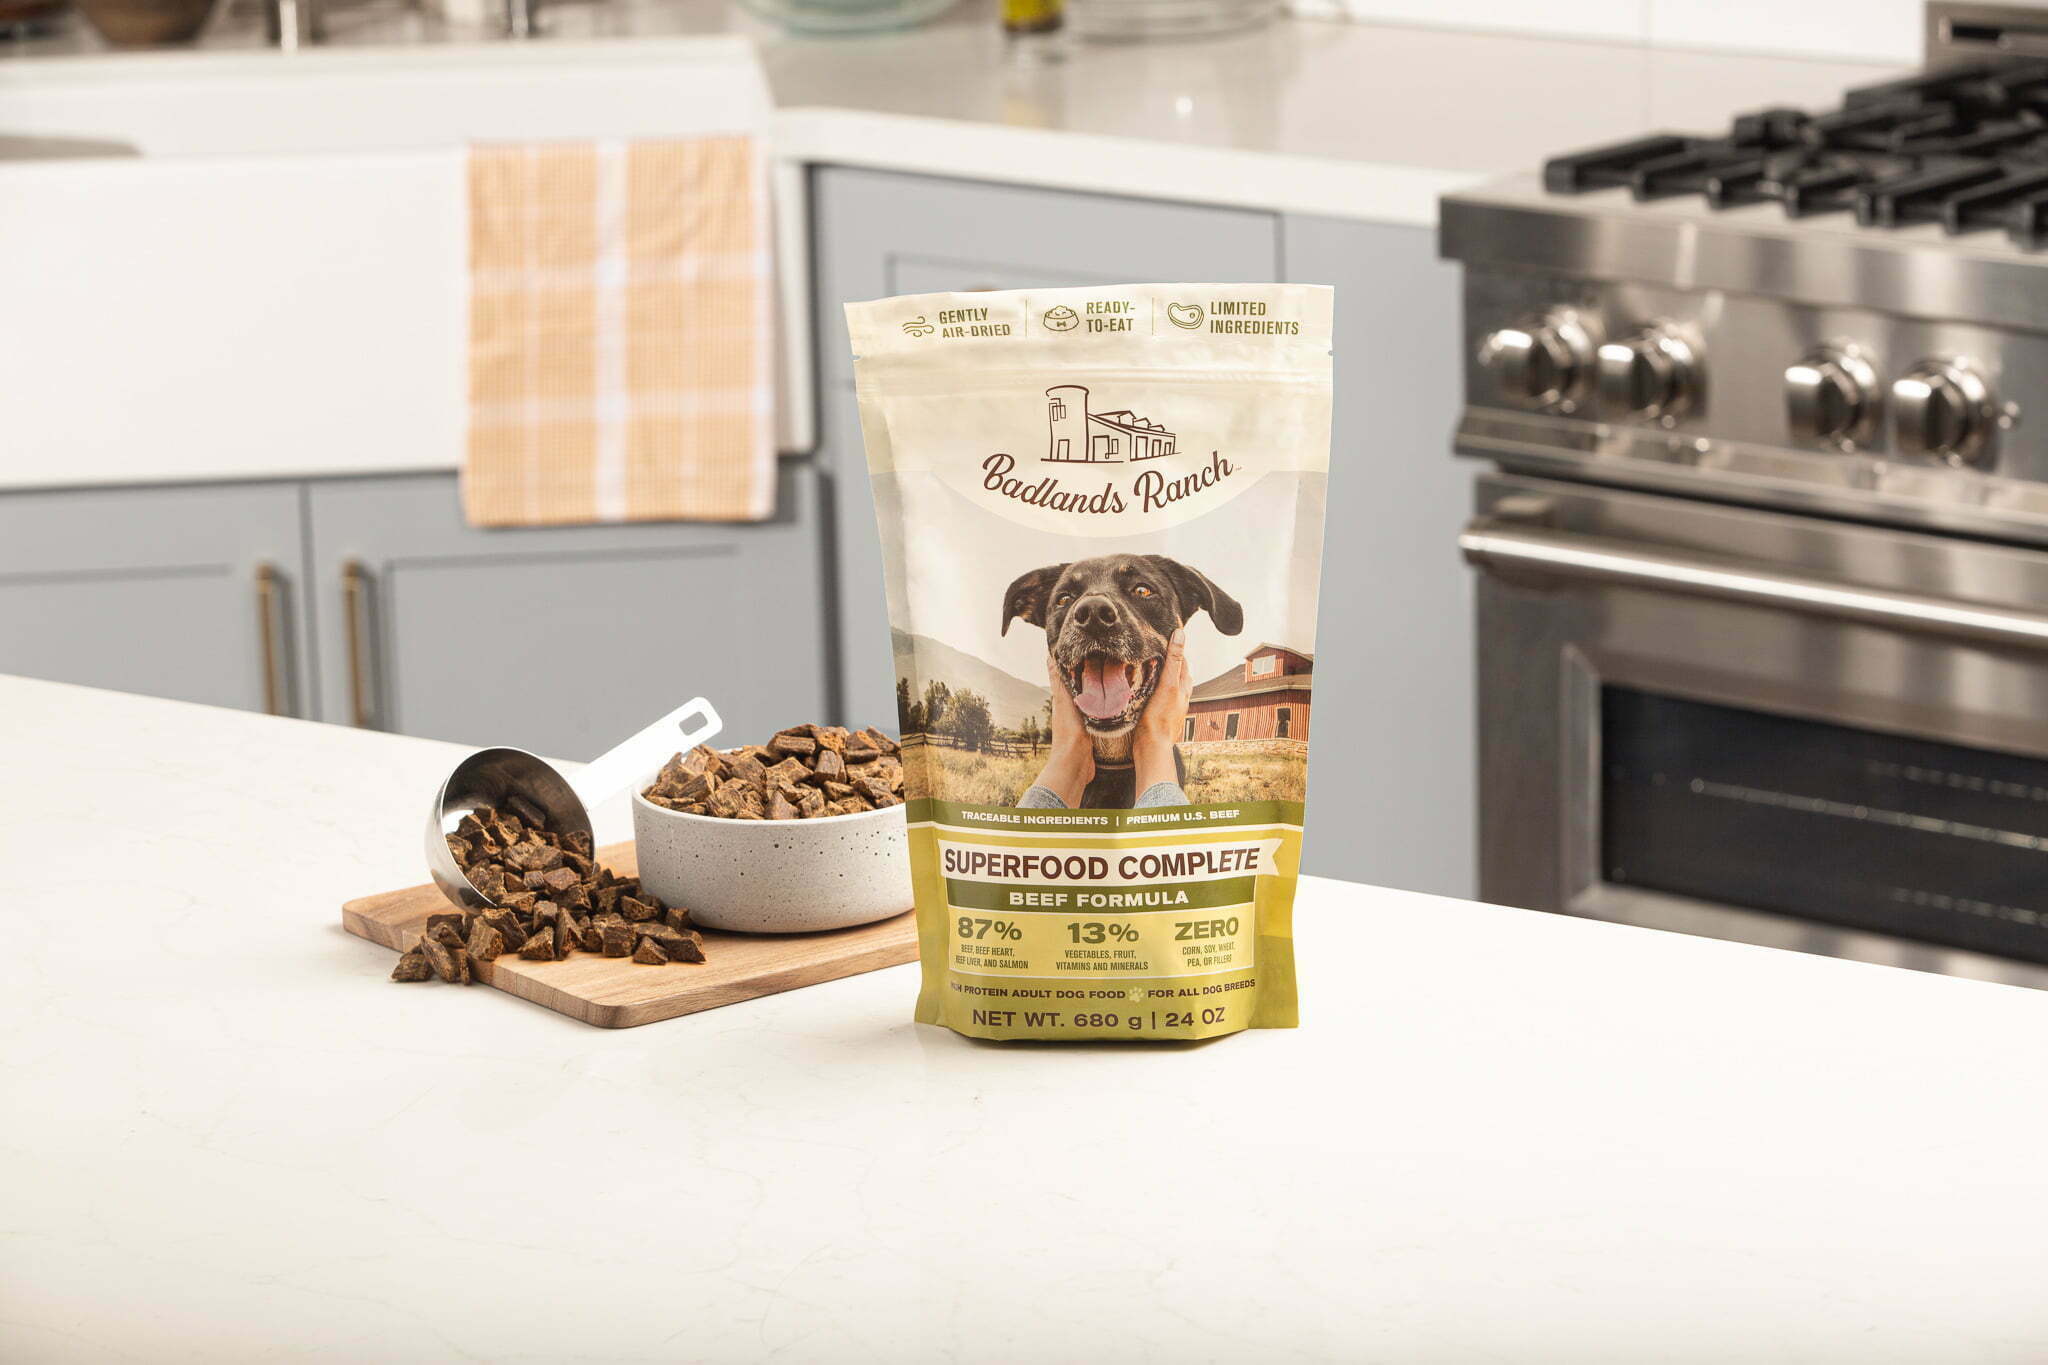 Badlands Ranch Superfood Complete dog food